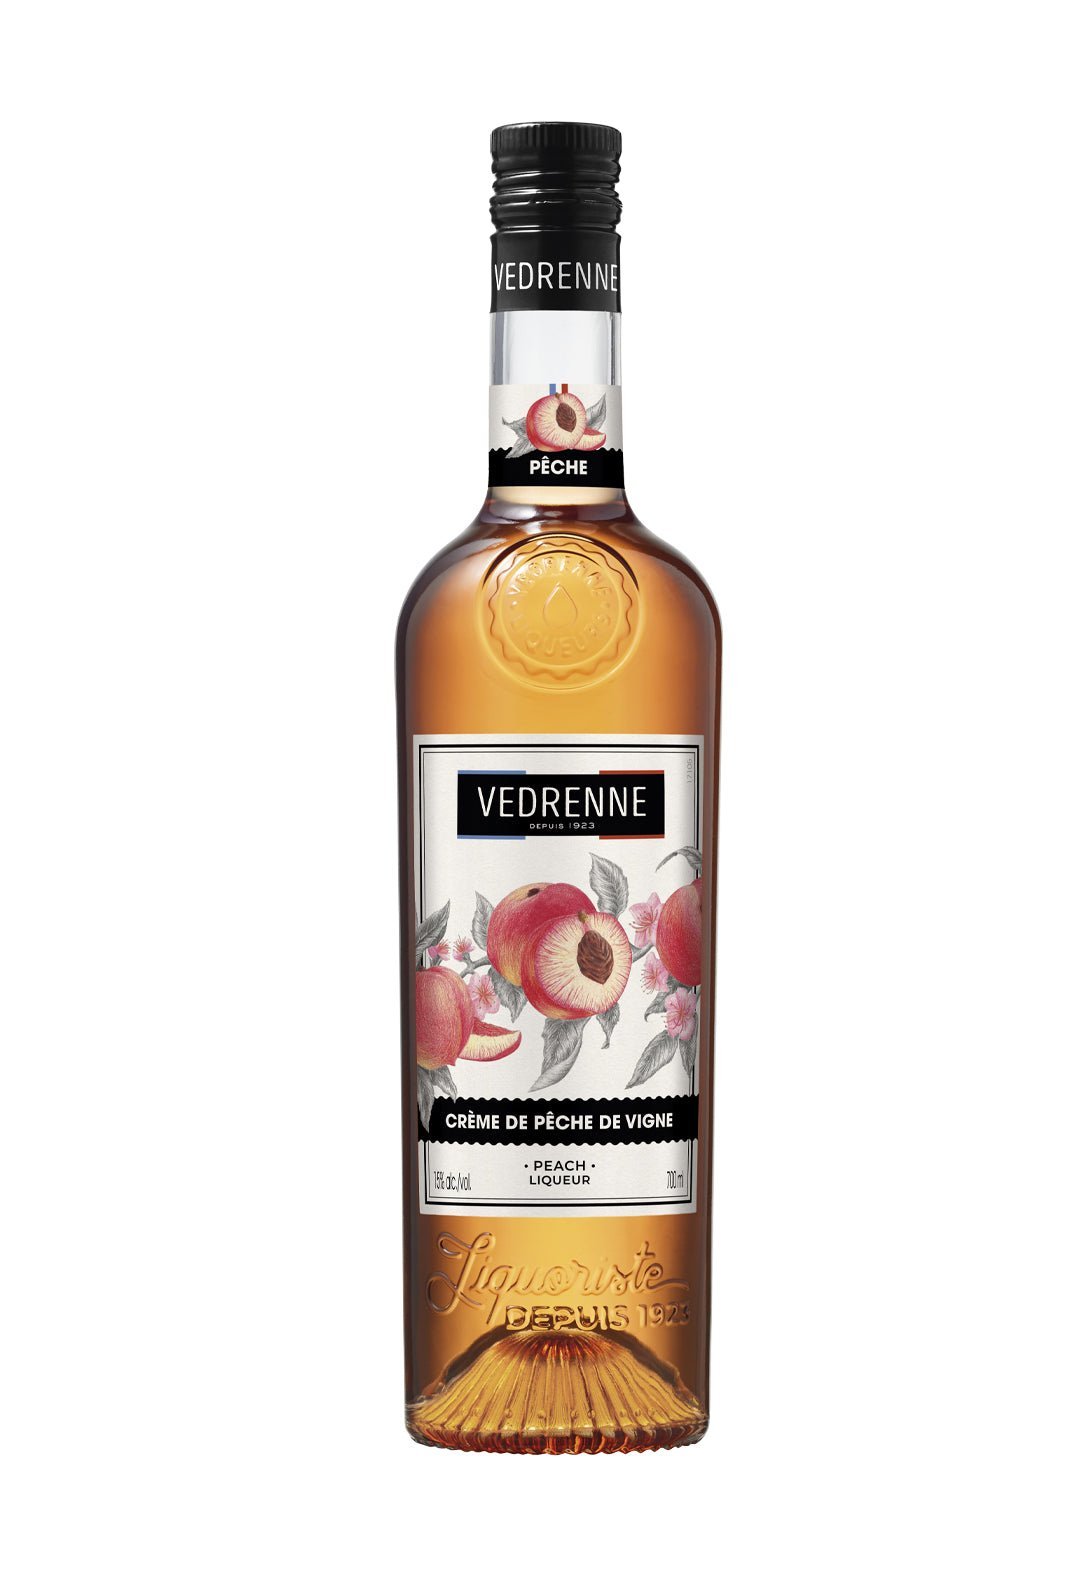 Vedrenne Liqueur Creme de Peche de Vigne (Vineyard Peach) 15% 700ml | Liqueurs | Shop online at Spirits of France